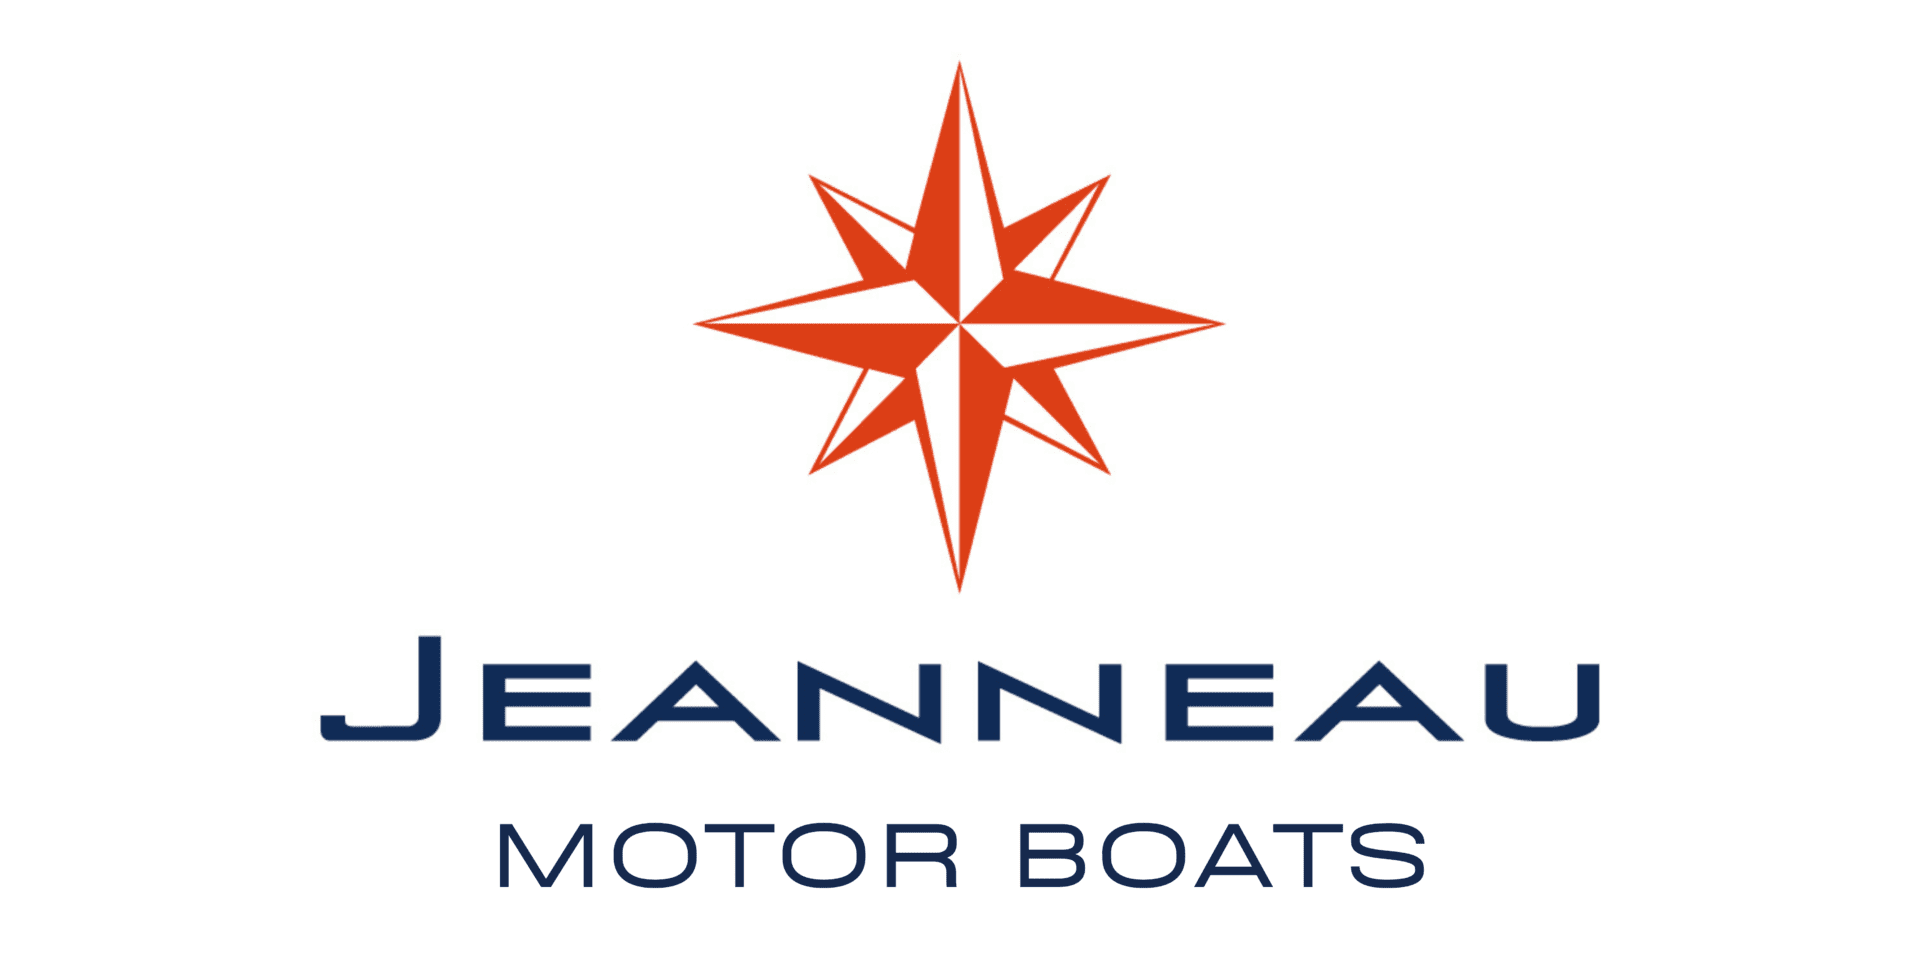 Jeanneau Motorboats logo